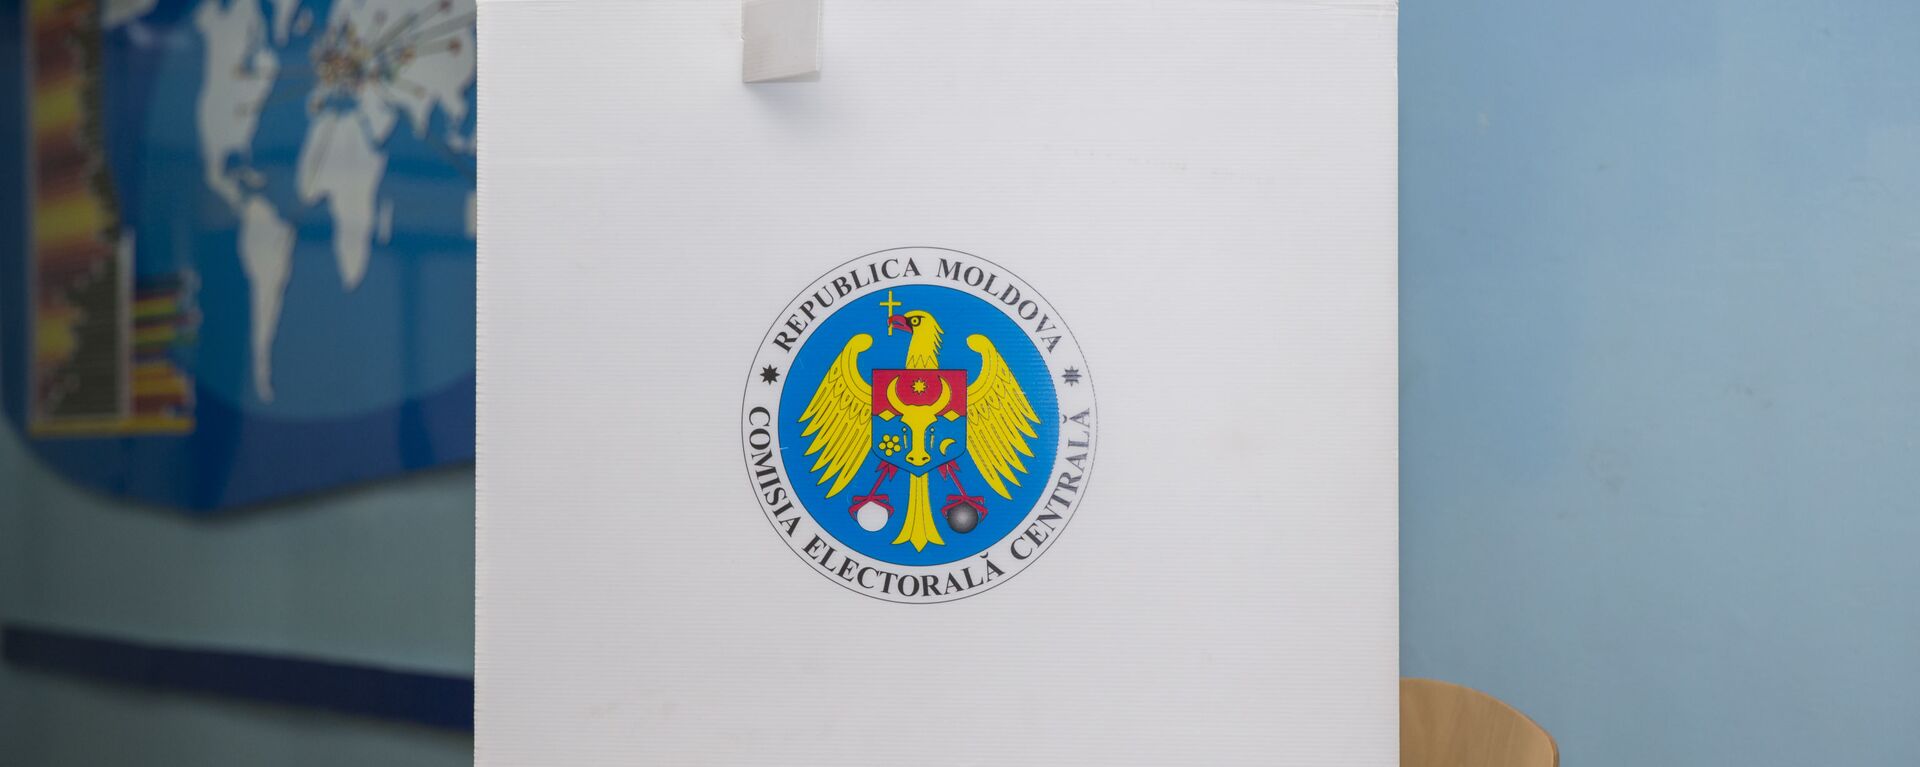 В Молдове открылись избирательные участки - Sputnik Молдова, 1920, 11.07.2021